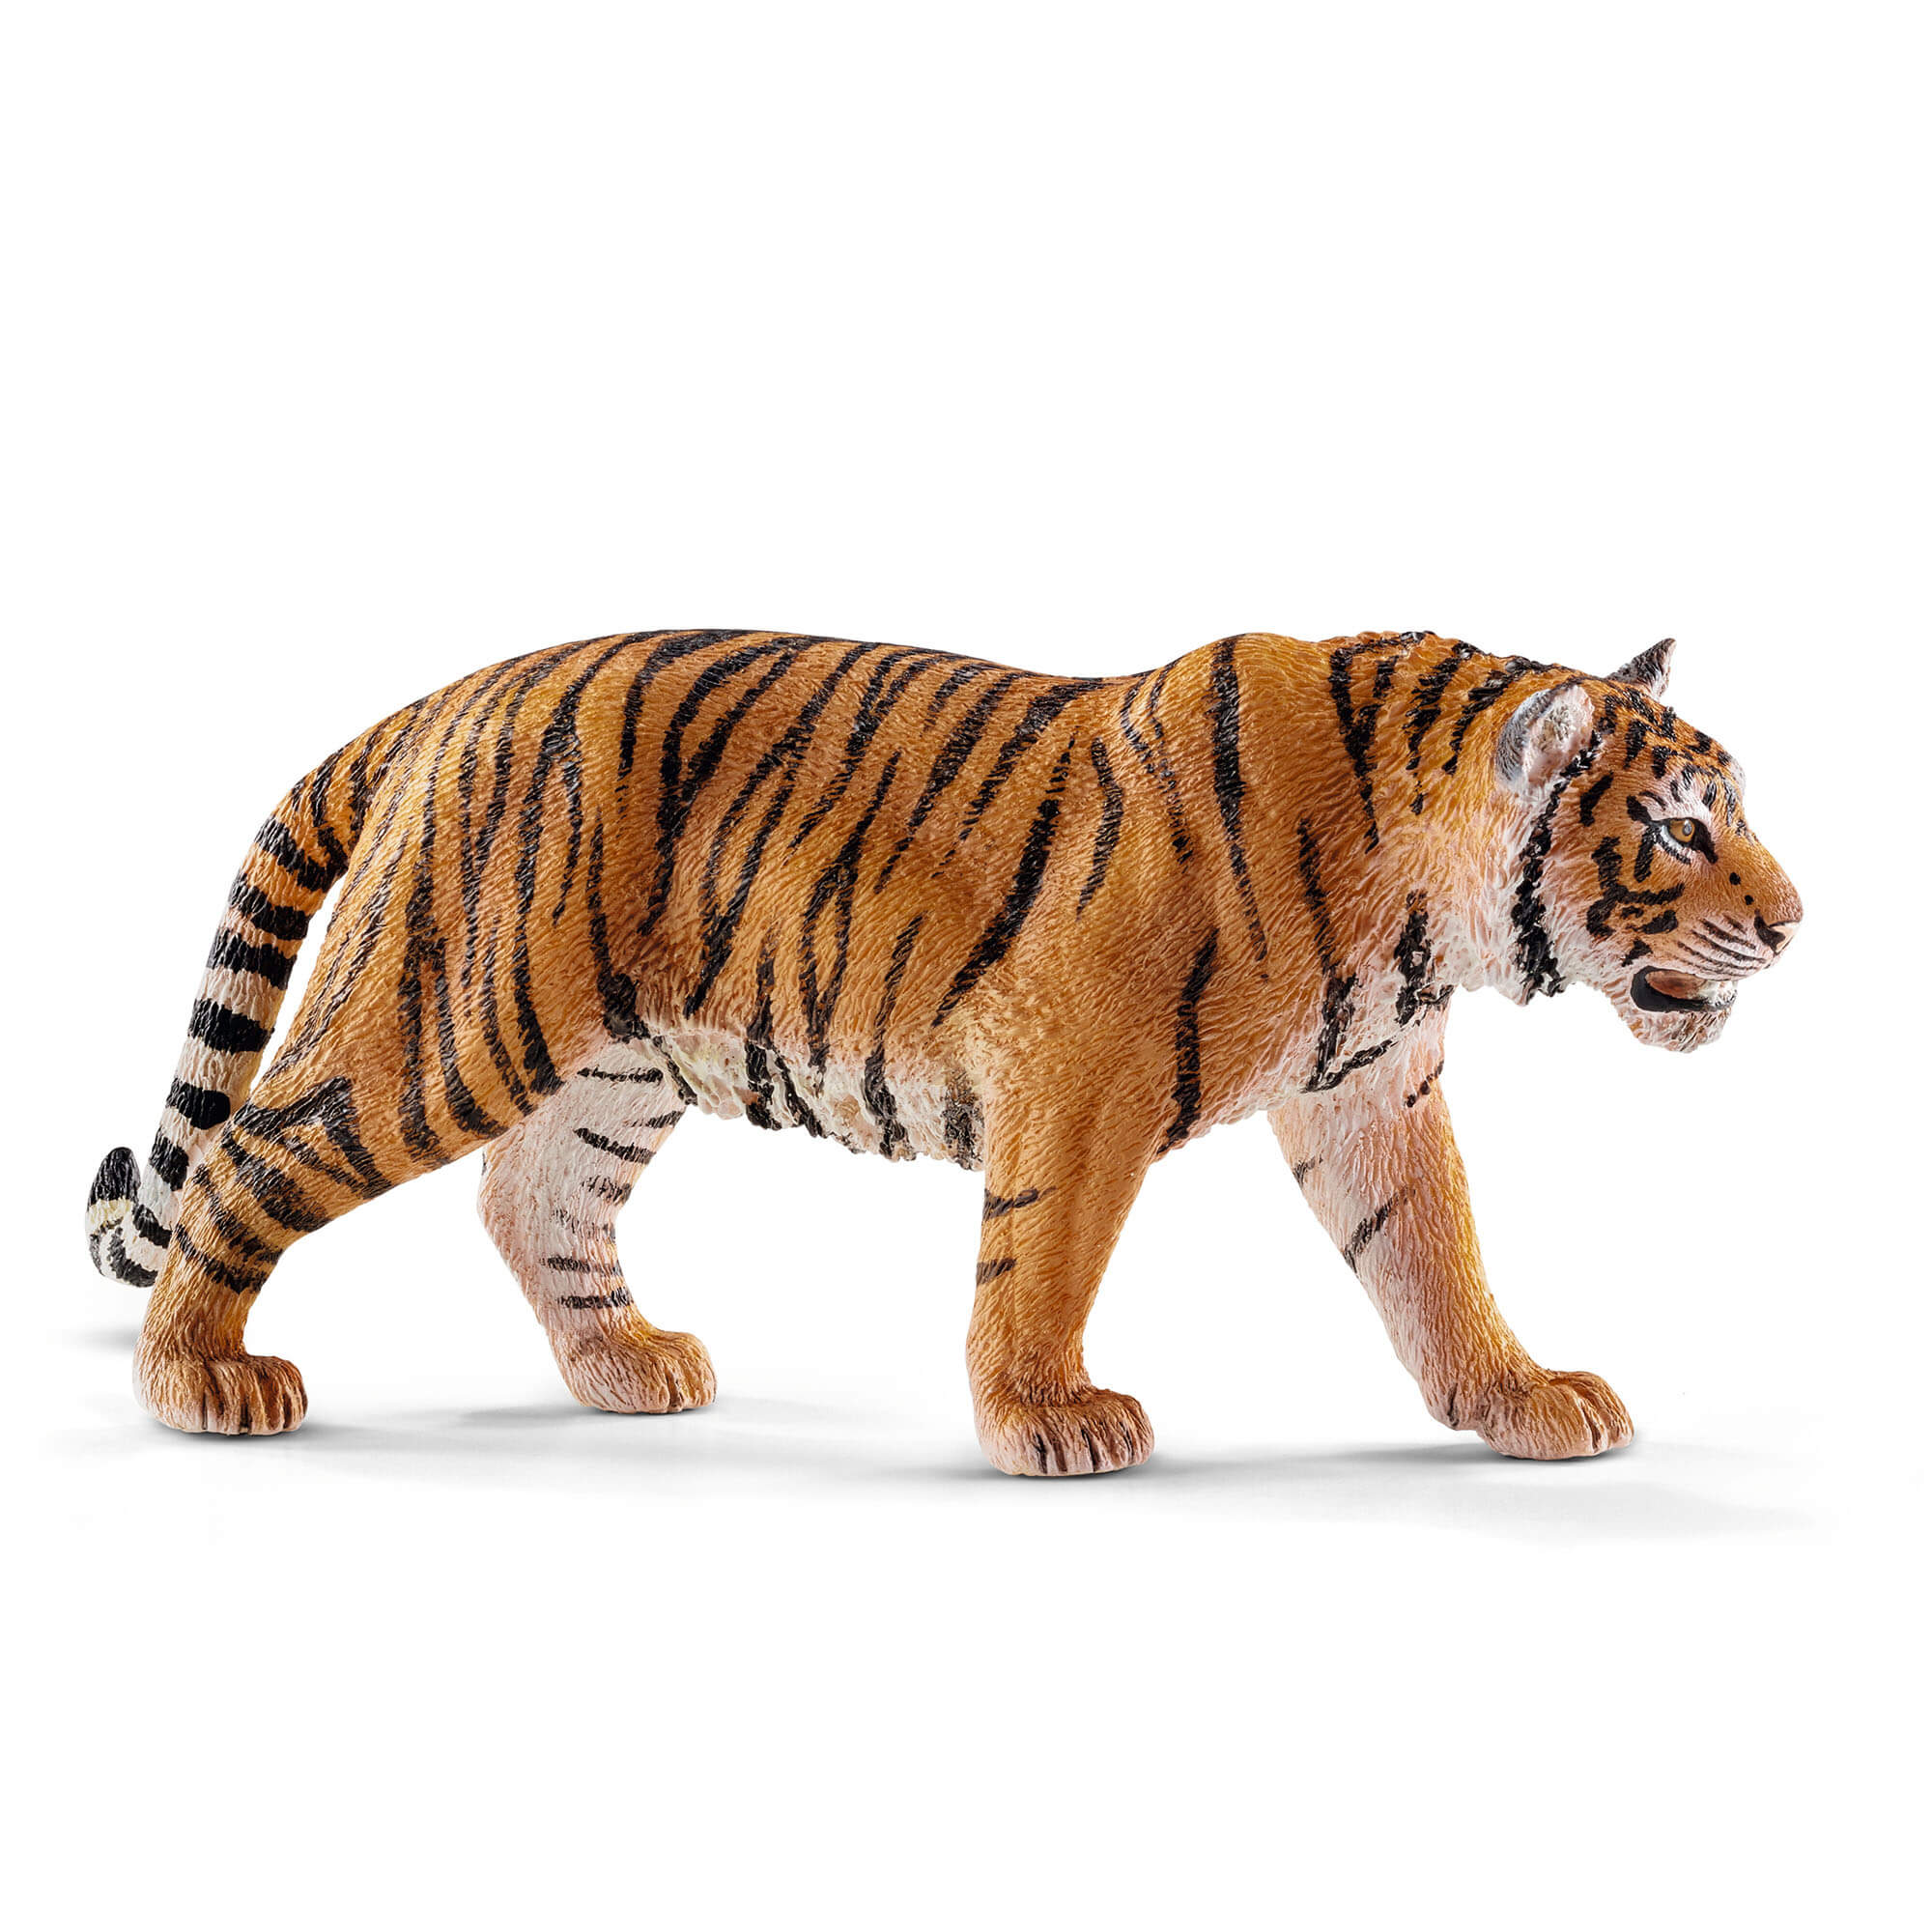 Schleich Wild Life Tiger Animal Figure